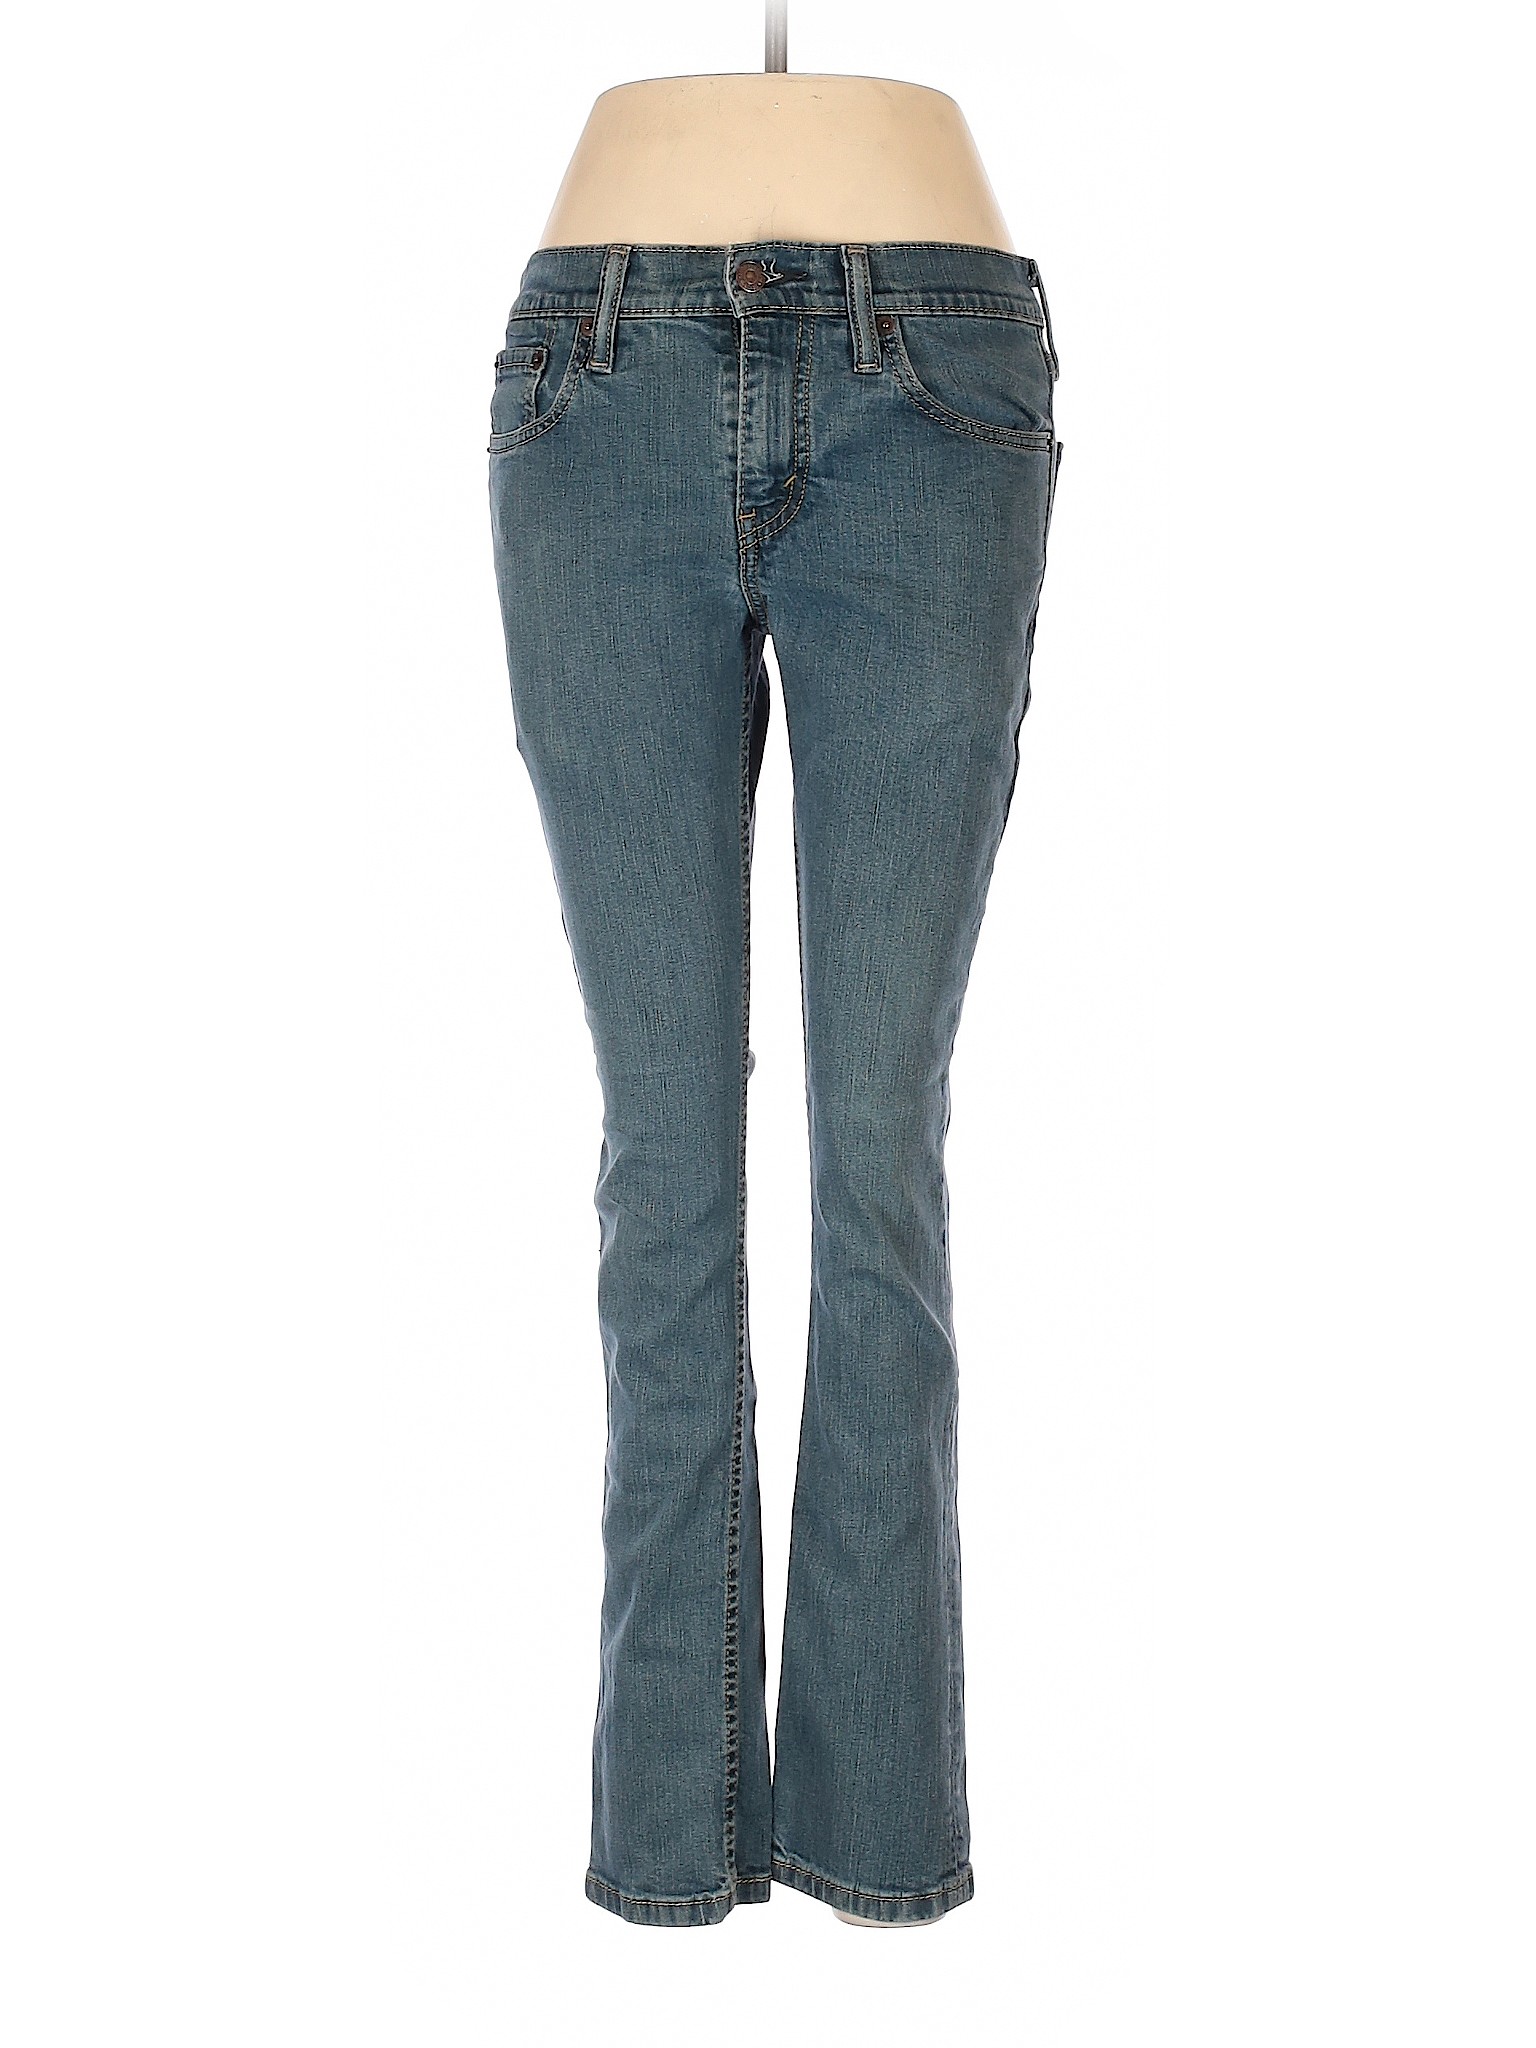 Levi's Women Blue Jeans 29W | eBay